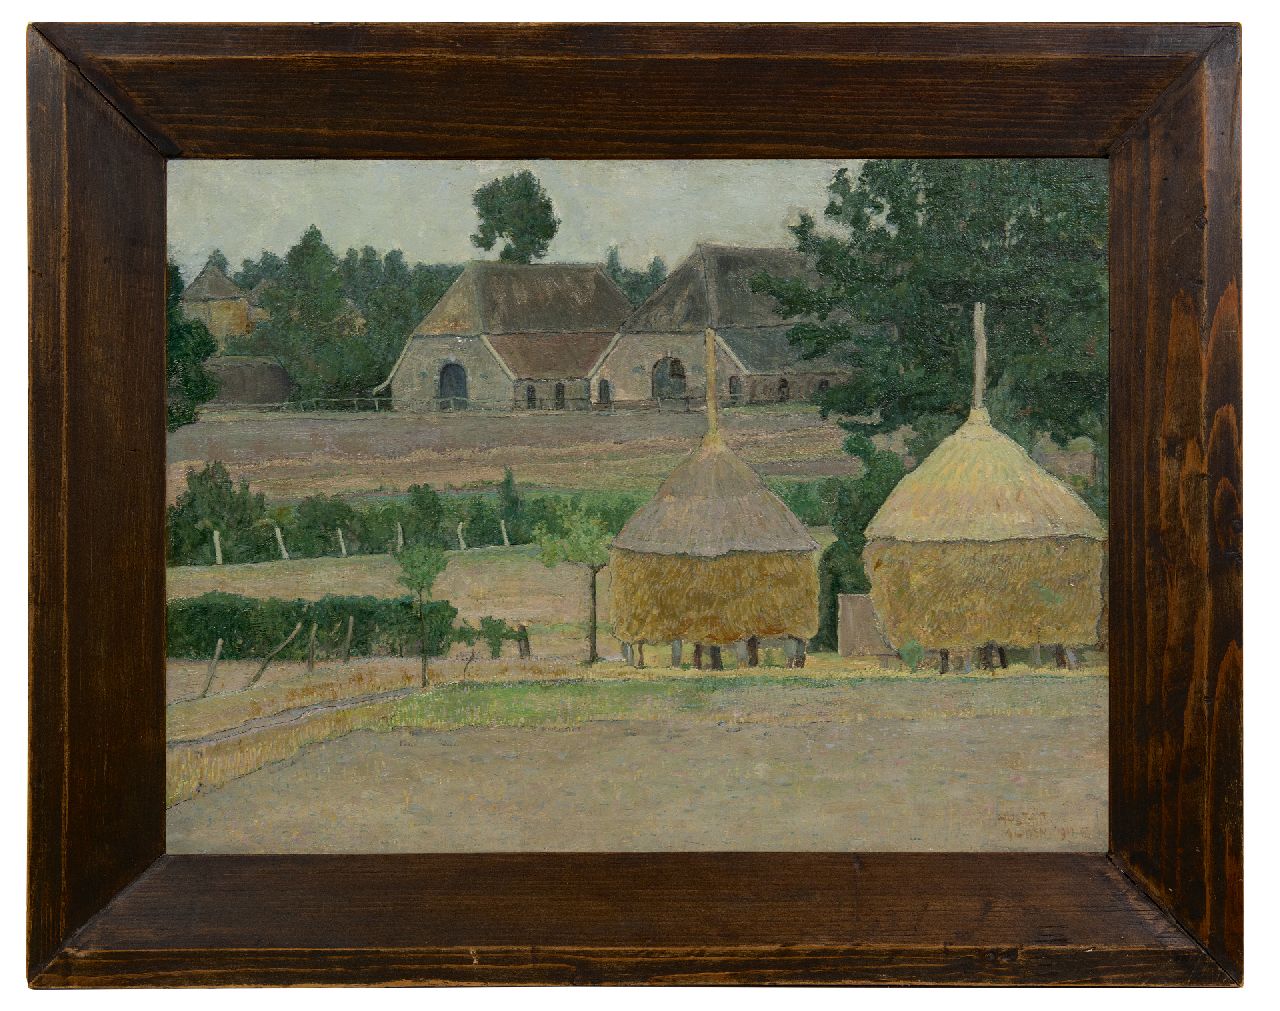 Huszár V.  | Vilmos Huszár | Schilderijen te koop aangeboden | Boerderij in Almen, olieverf op doek op paneel 38,1 x 50,9 cm, gesigneerd rechtsonder en gedateerd 1911 VIII